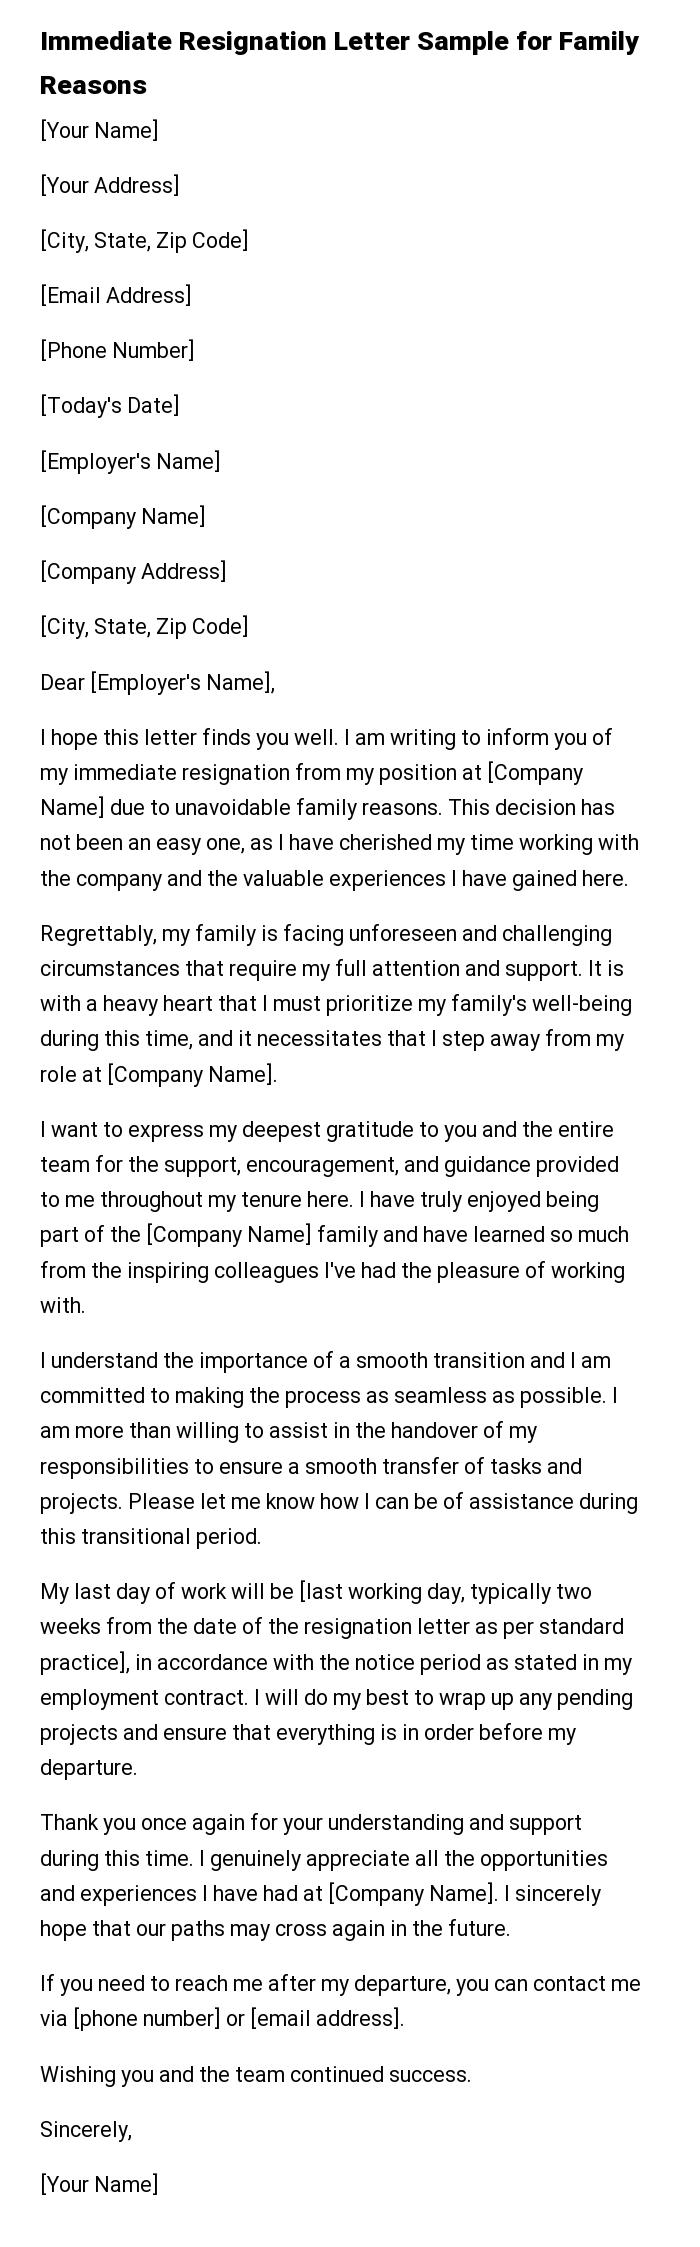 Immediate Resignation Letter Sample for Family Reasons